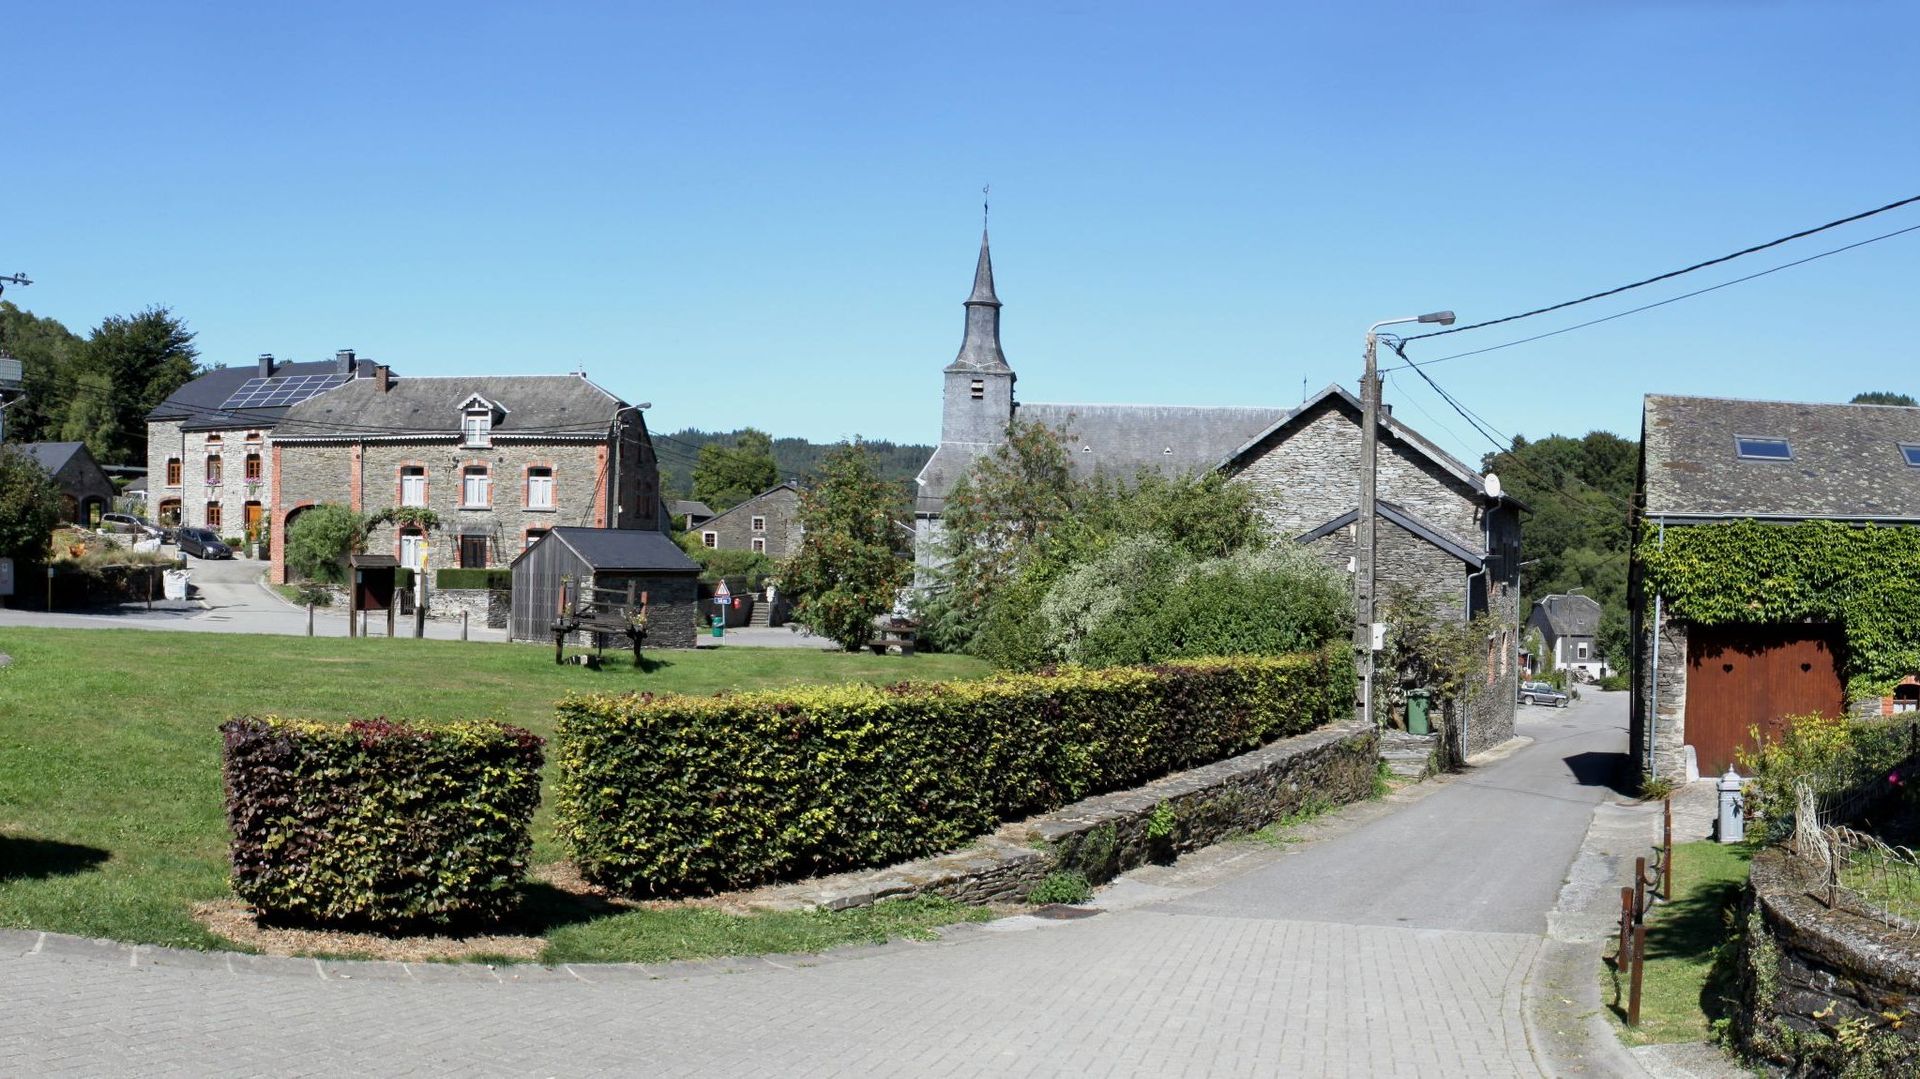 Image panoramique du village de Laforêt à Vresse-sur-Semois